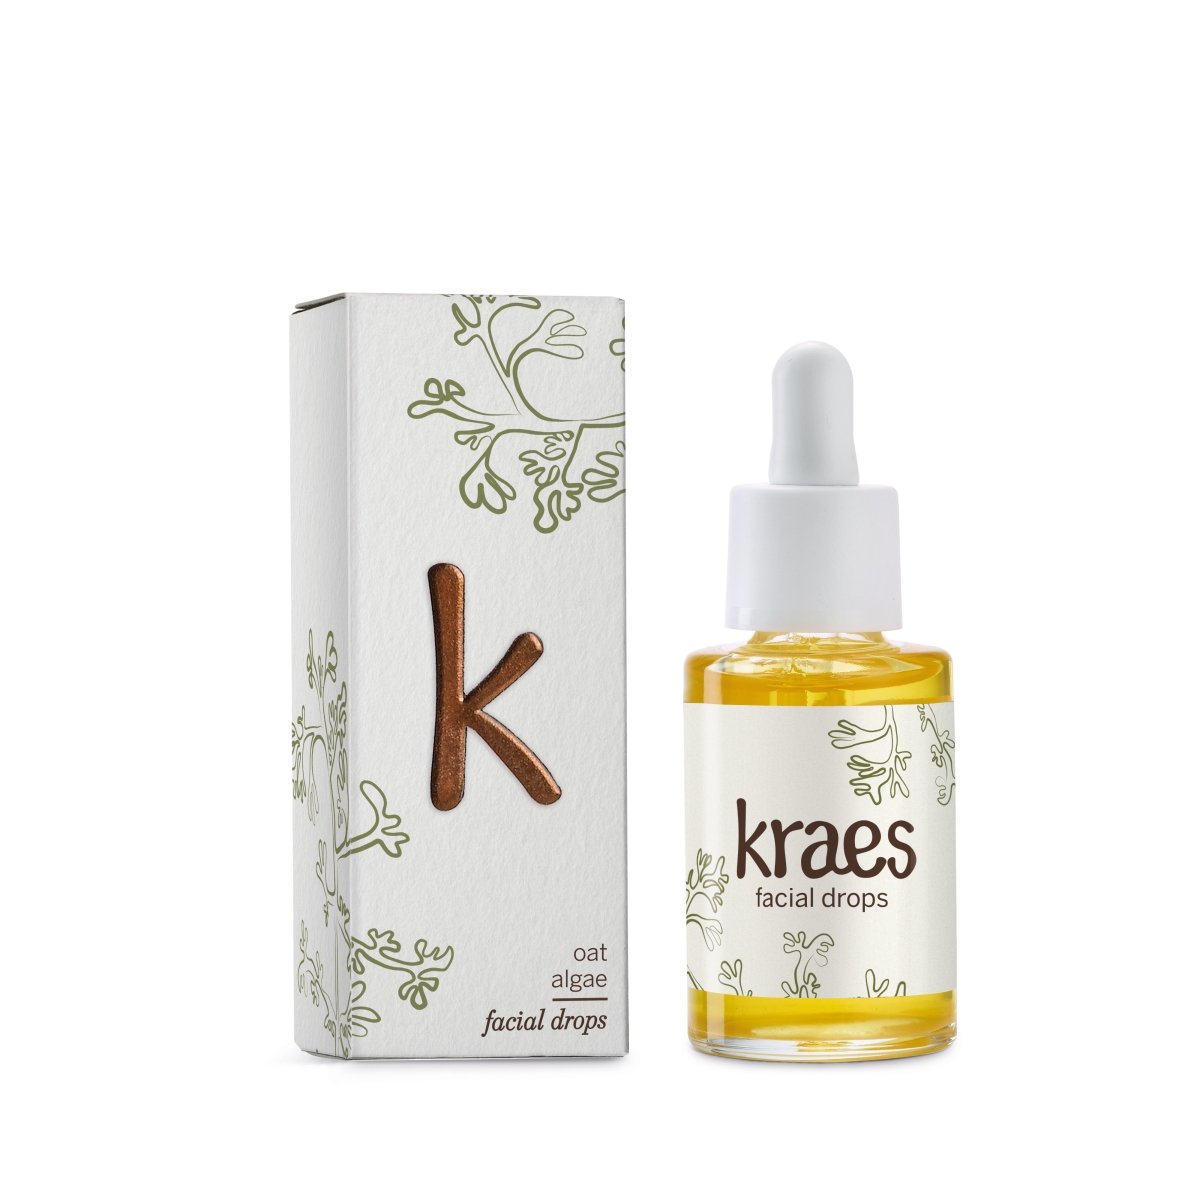 KRAES Facial Drops 30 ml.#KraesSkincareBuump